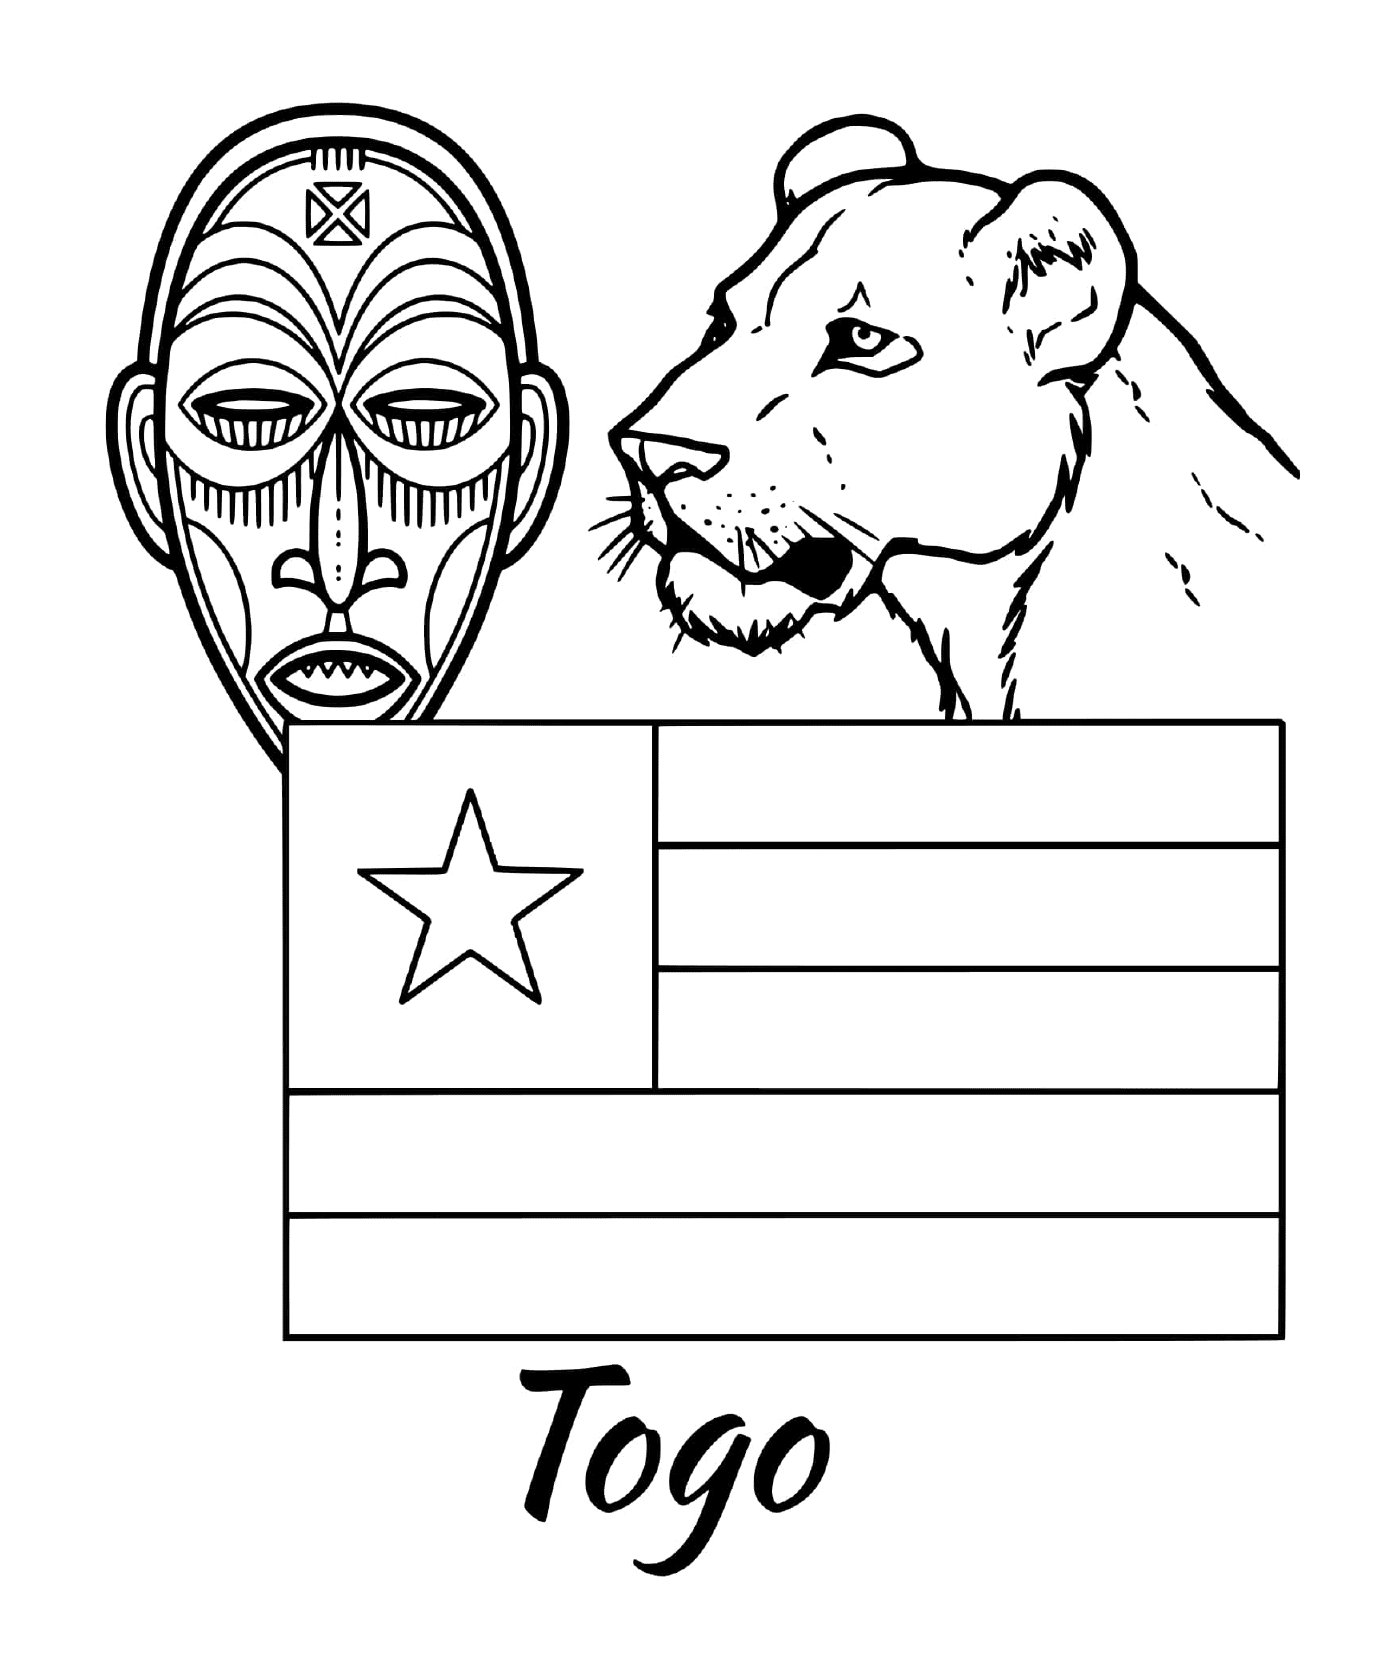   Drapeau du Togo avec un masque tribal 